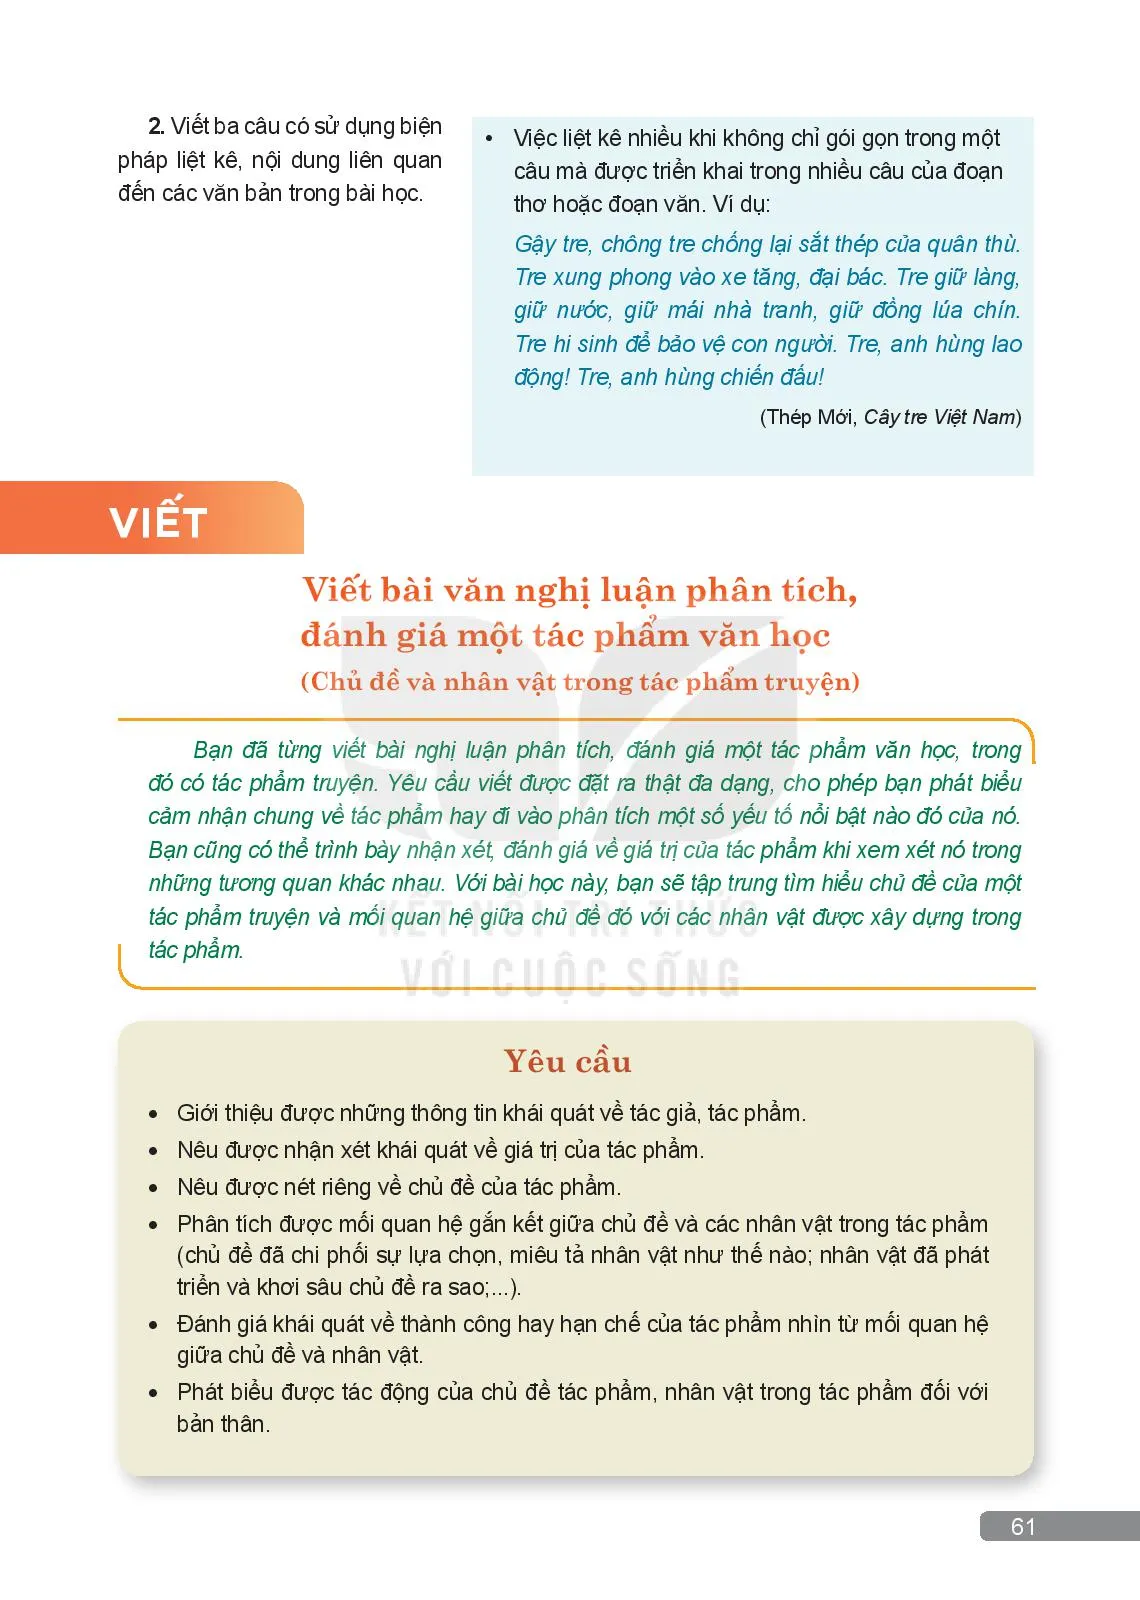 Thực hành tiếng Việt: Biện pháp chêm xen, biện pháp liệt kê